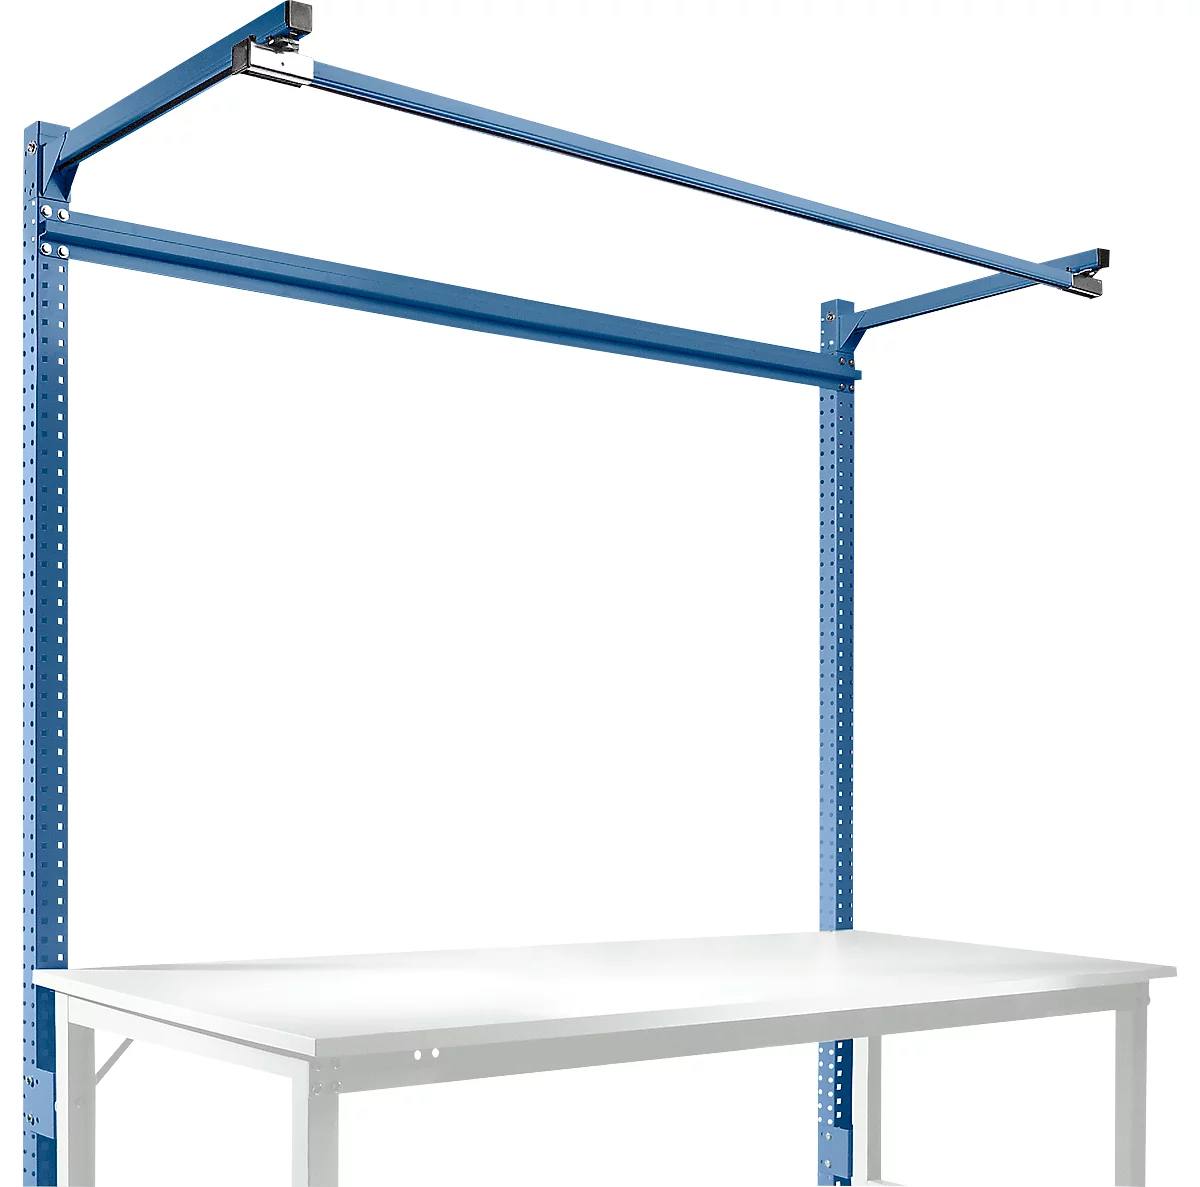 Estructura pórtica adicional con brazo saliente, Mesa básica SPEZIAL mesa de trabajo/banco de trabajo UNIVERSAL/PROFI, 1750 mm, azul brillante